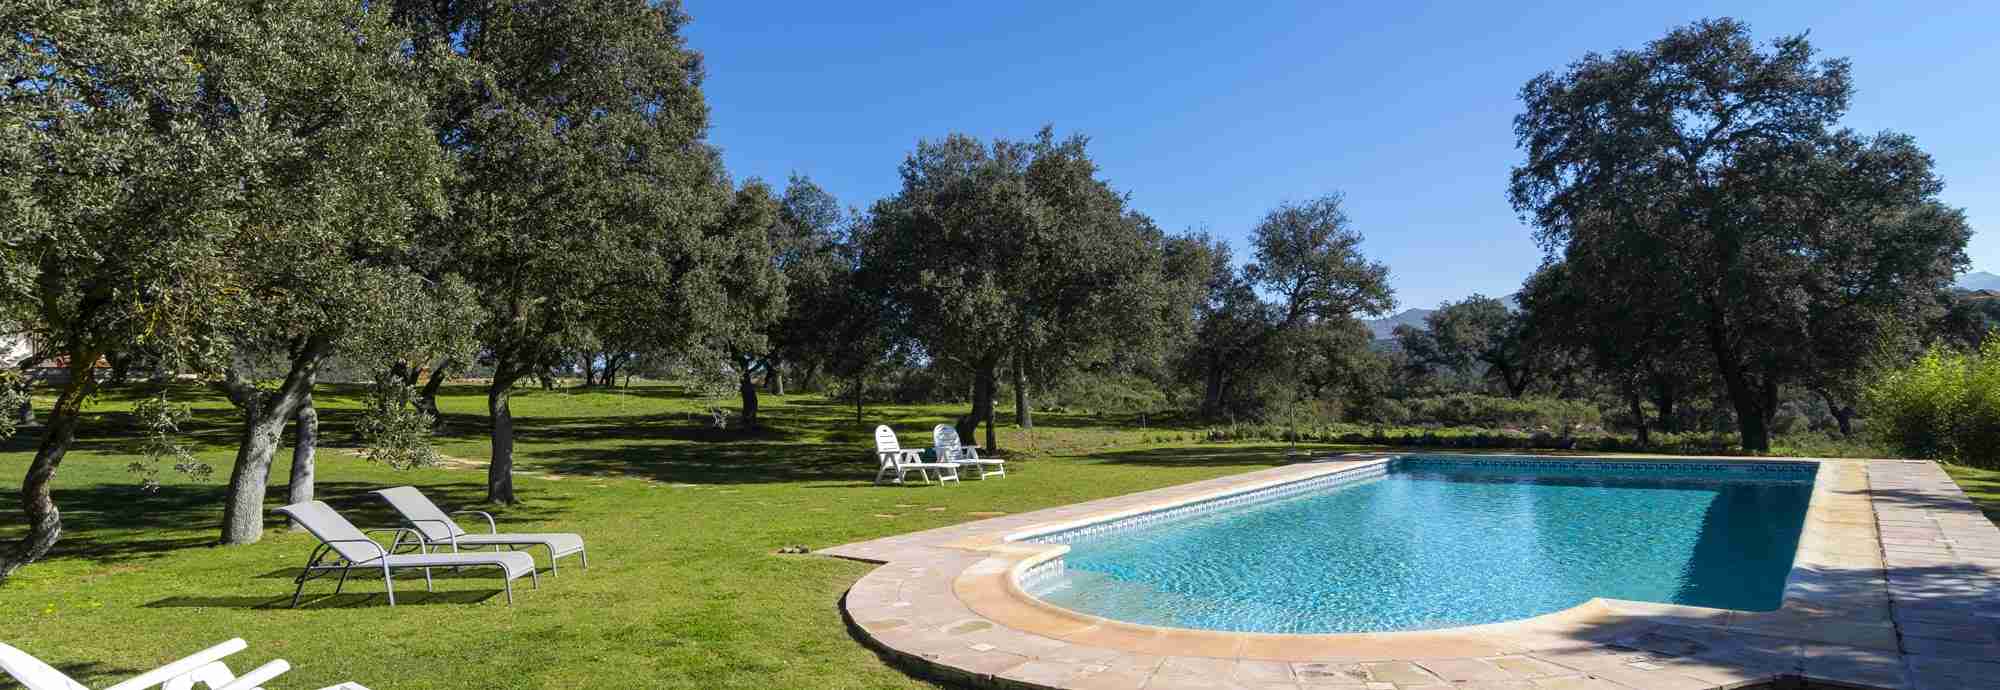 Villa tradicional andaluza con su propio campo de golf y pista de tenis